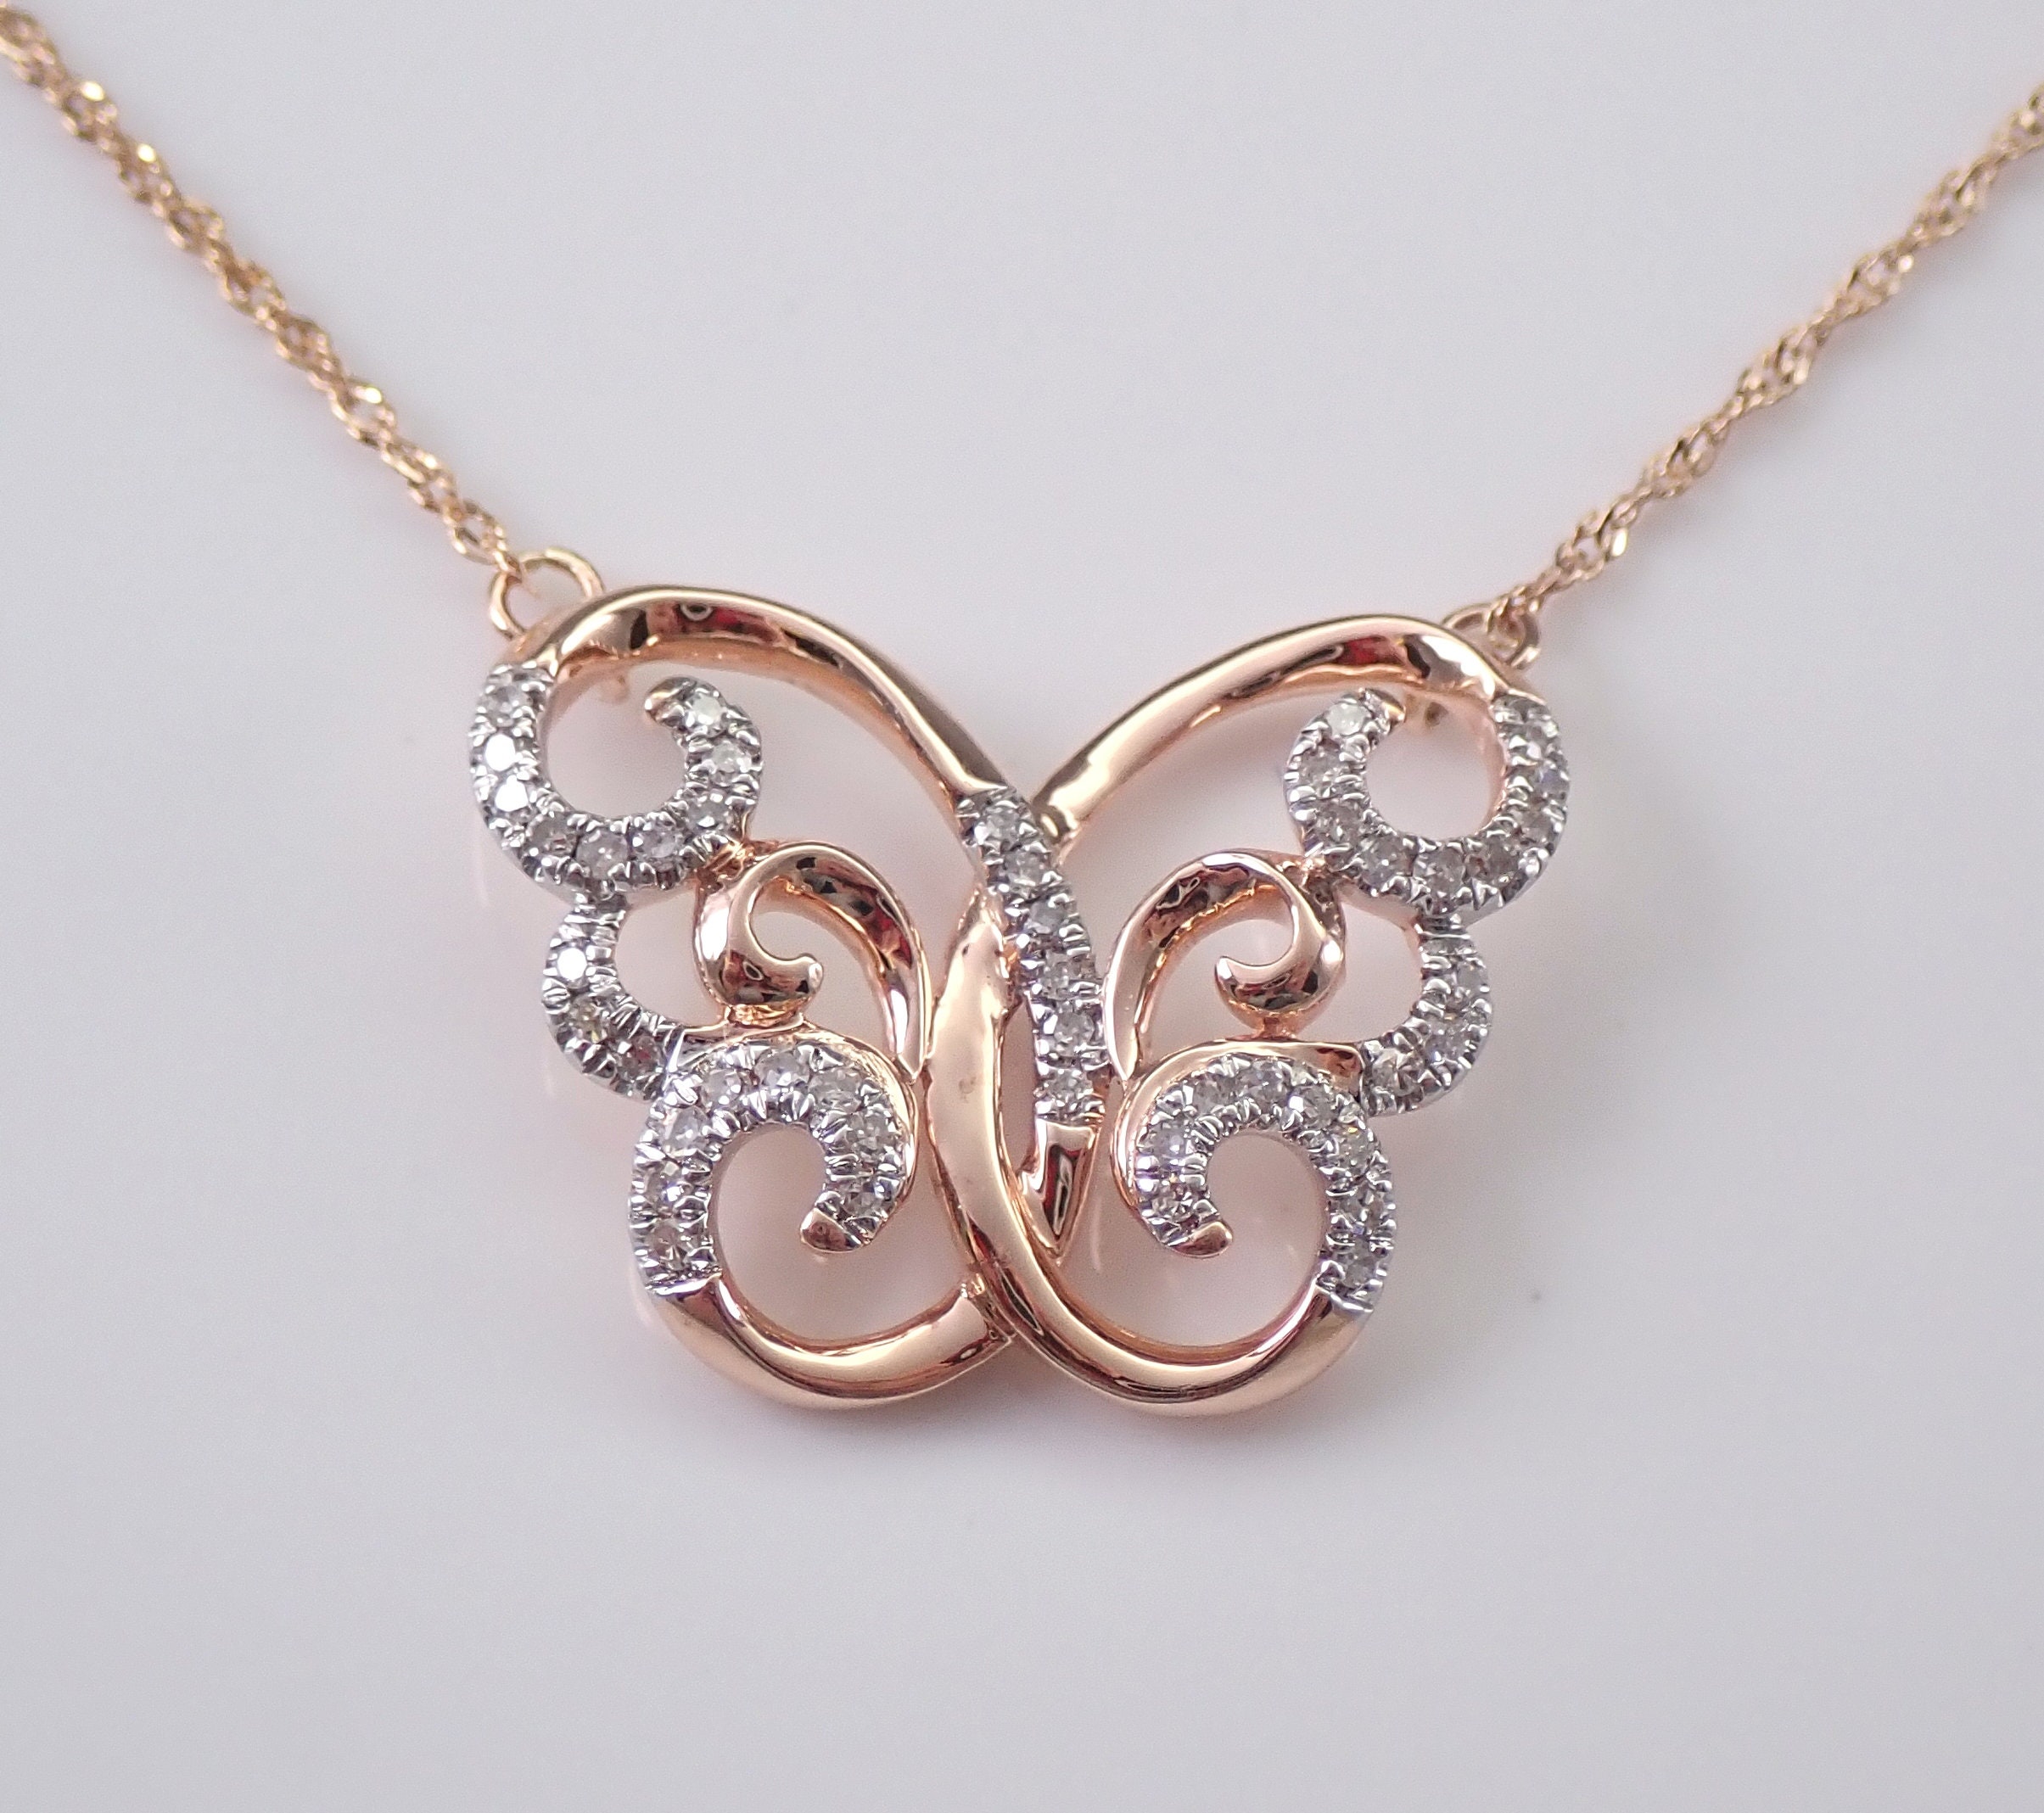 Gold Necklace Gift » Arthatravel.com